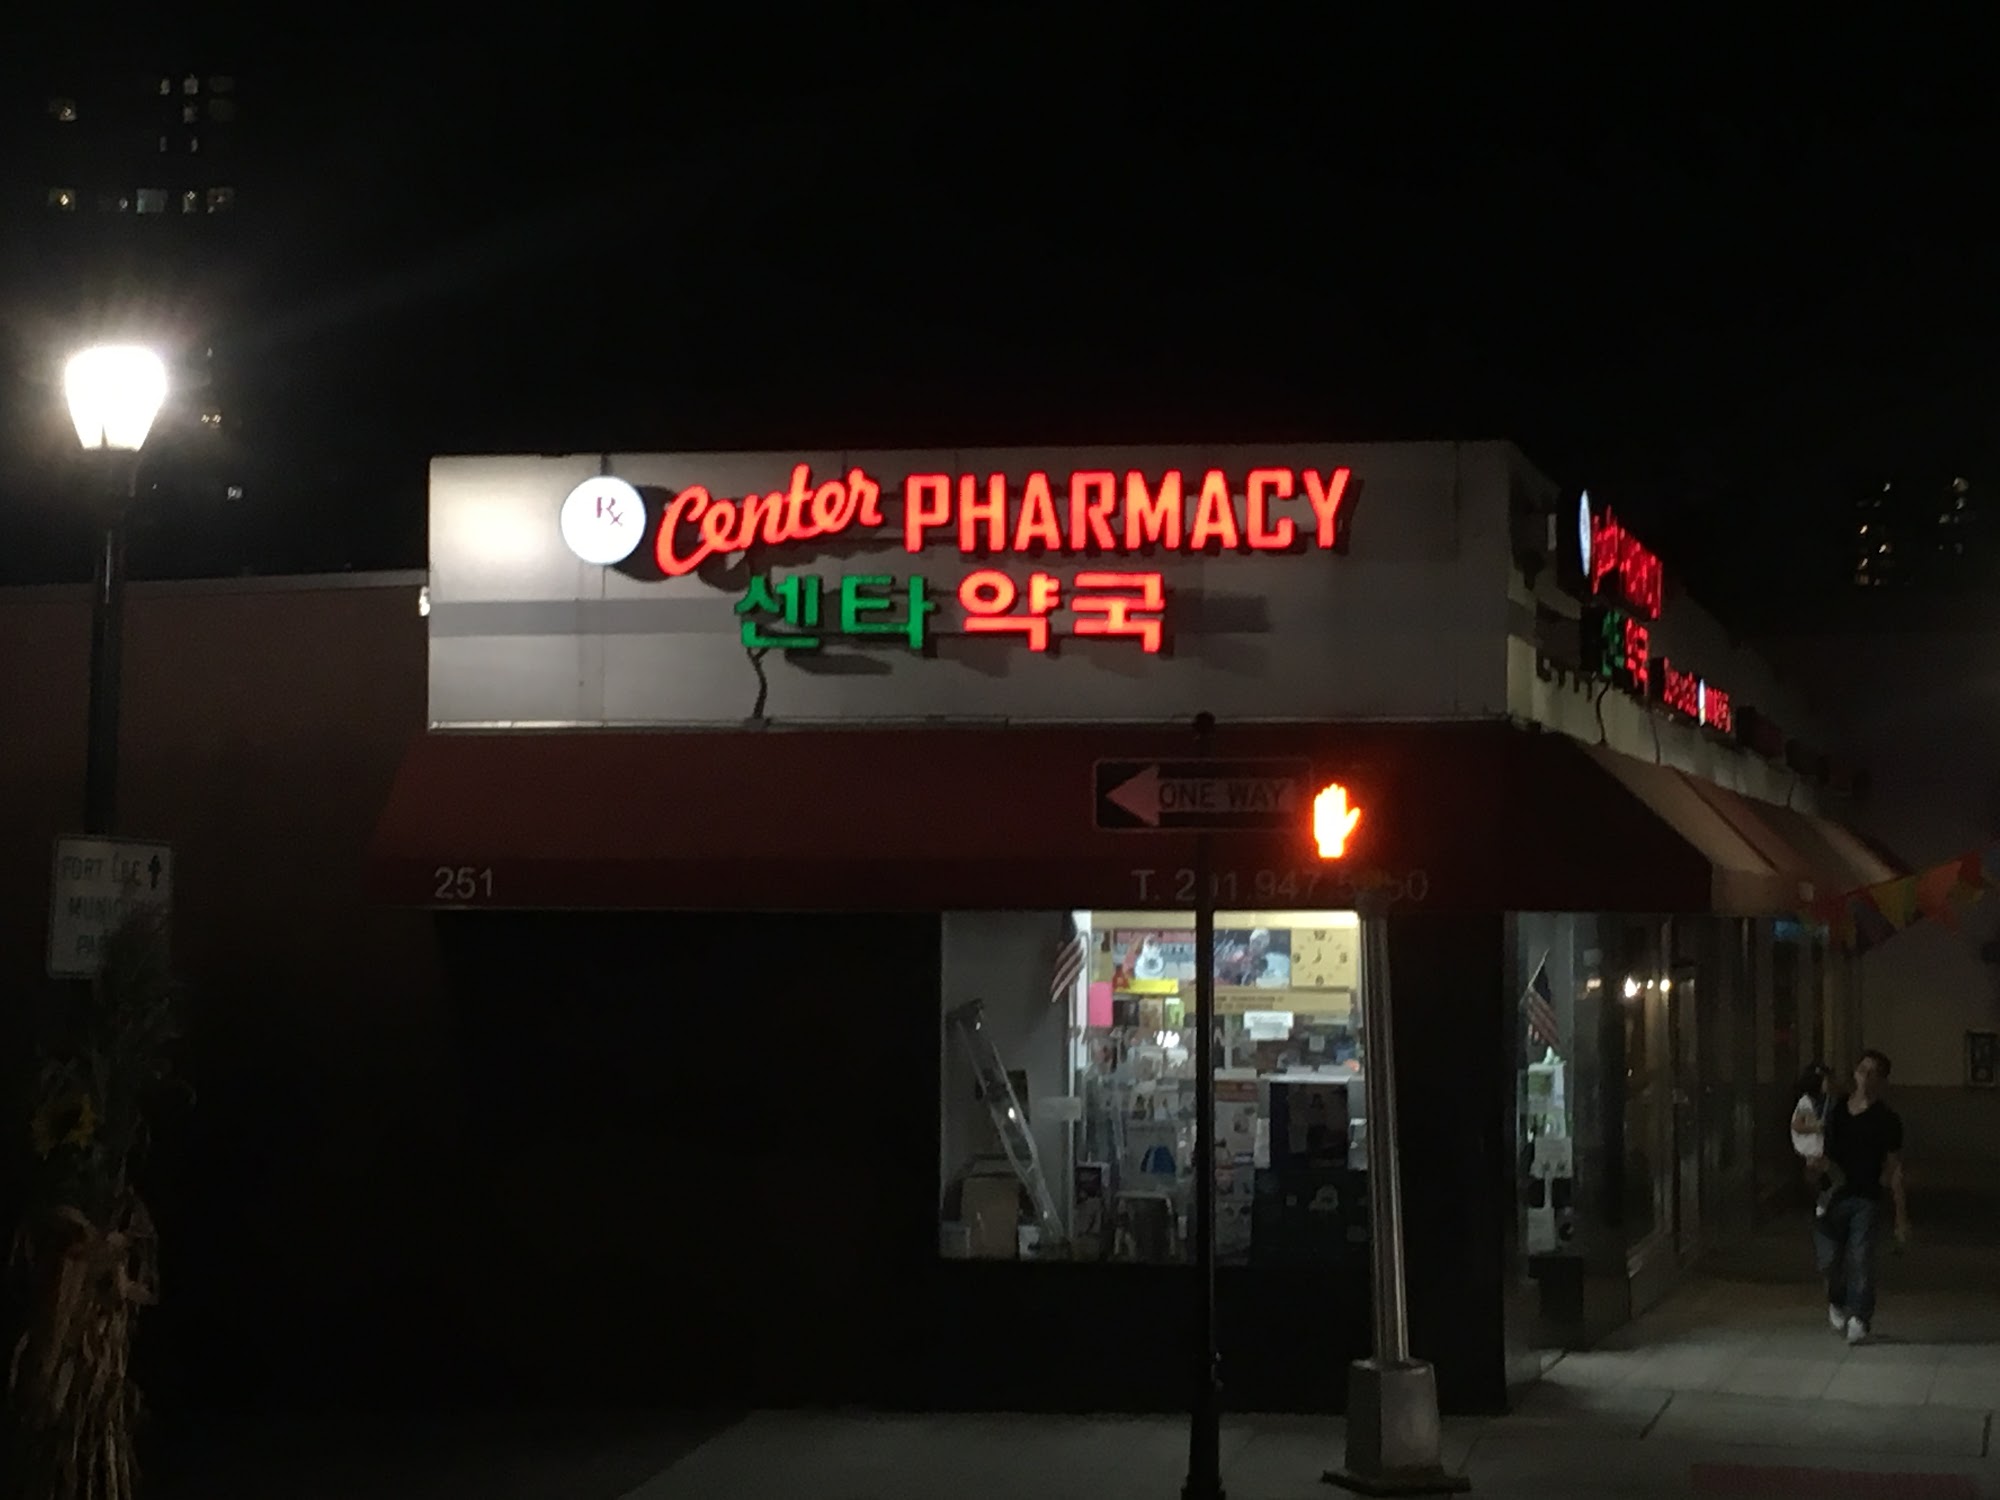 Center Pharmacy 센타약국 | Pharmacy in Fort Lee, NJ